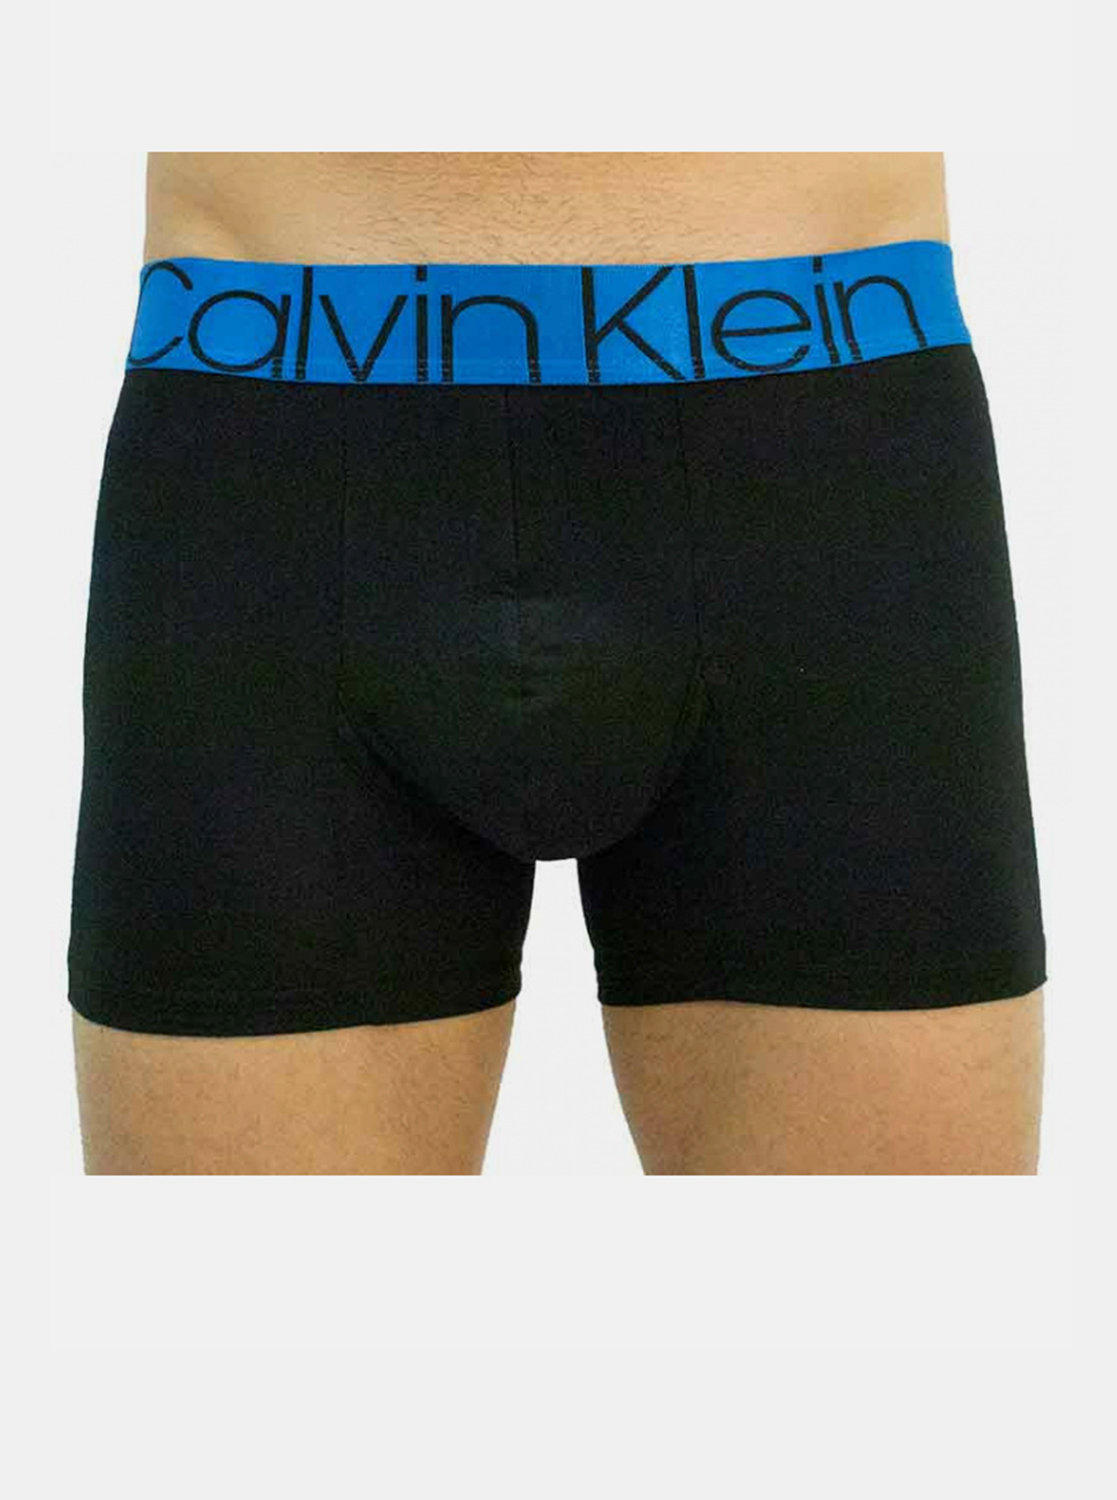 Fotografie Pánské boxerky Calvin Klein černé